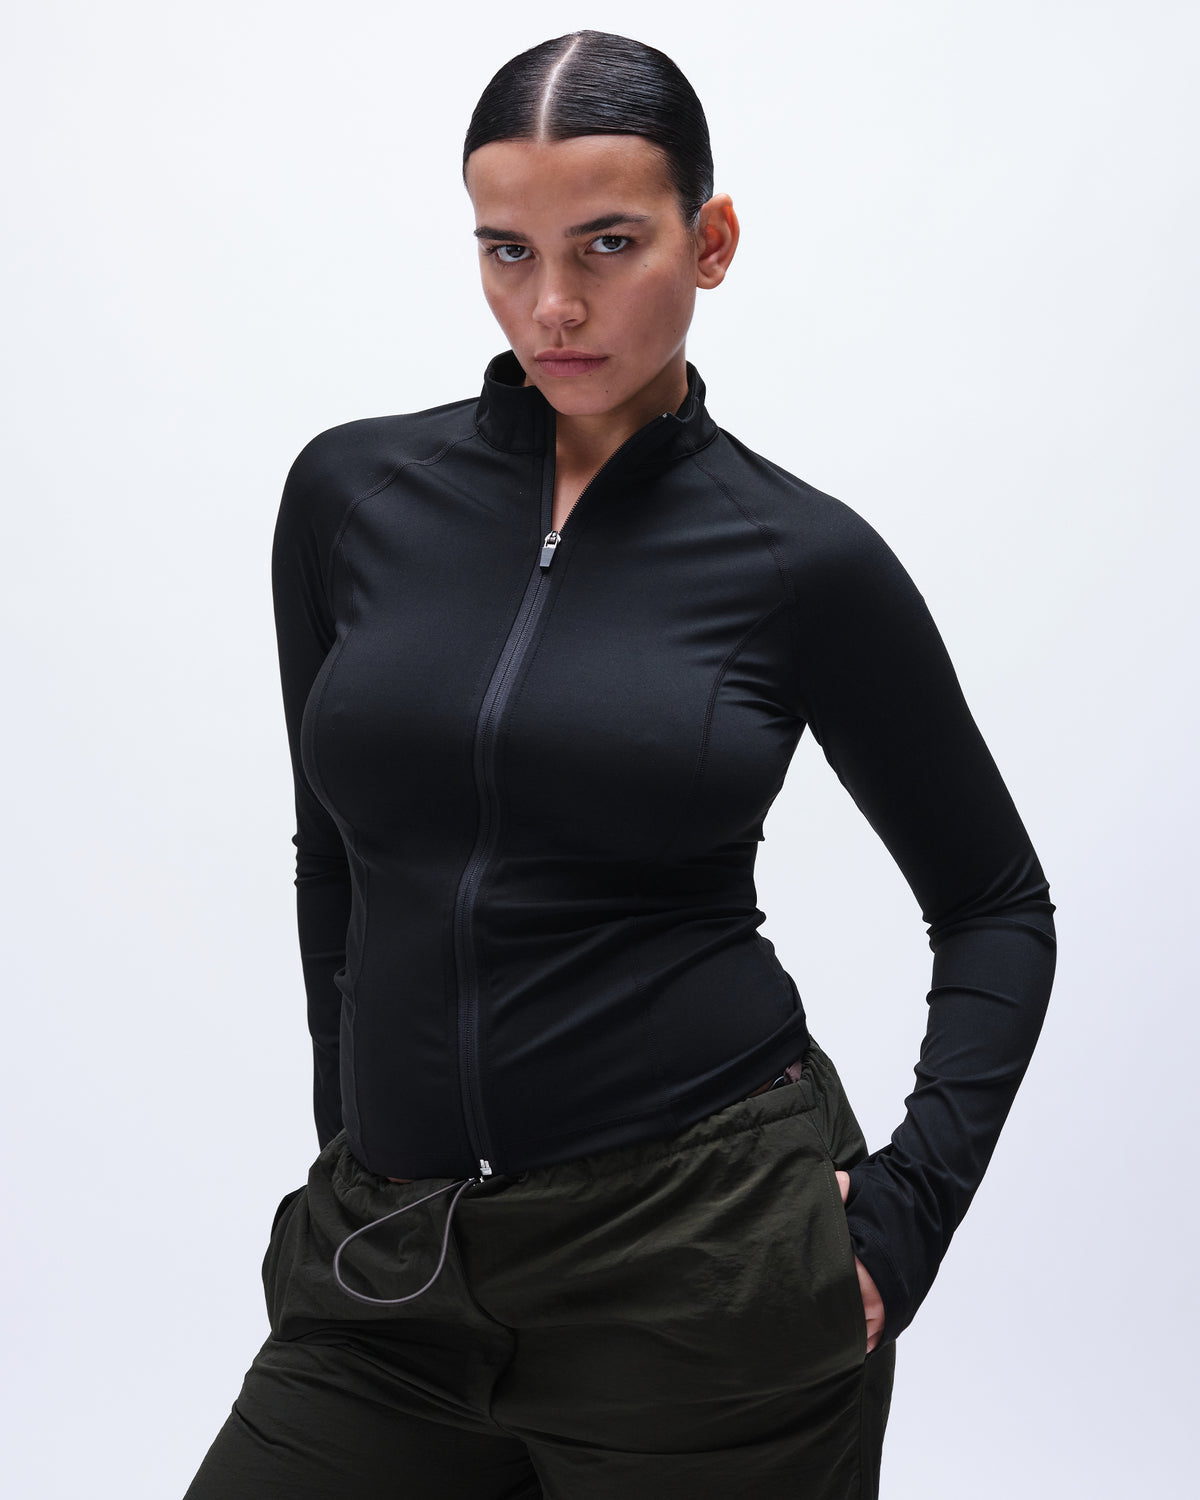 Xianreng Women's Long Sleeve Top Sweatshirt Yoga Half Zip Slim Fit